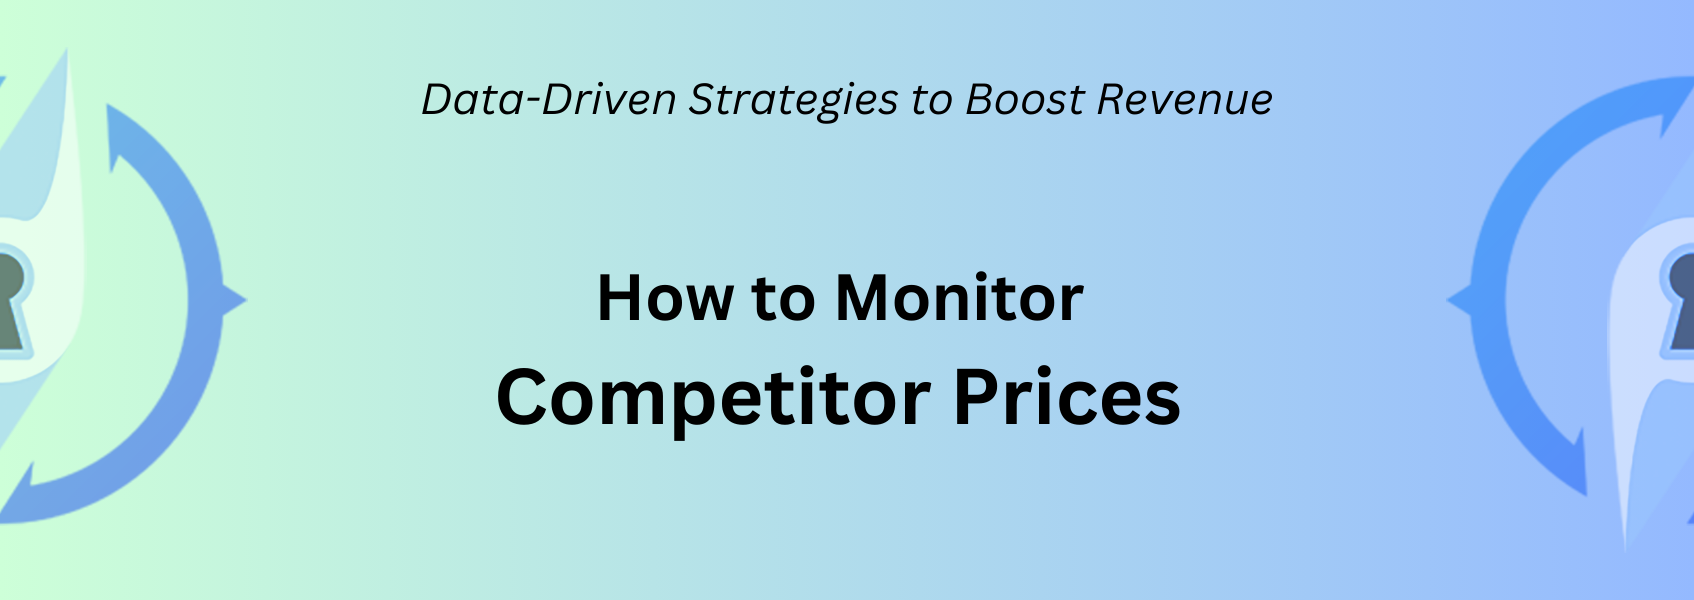 Come monitorare i prezzi della concorrenza